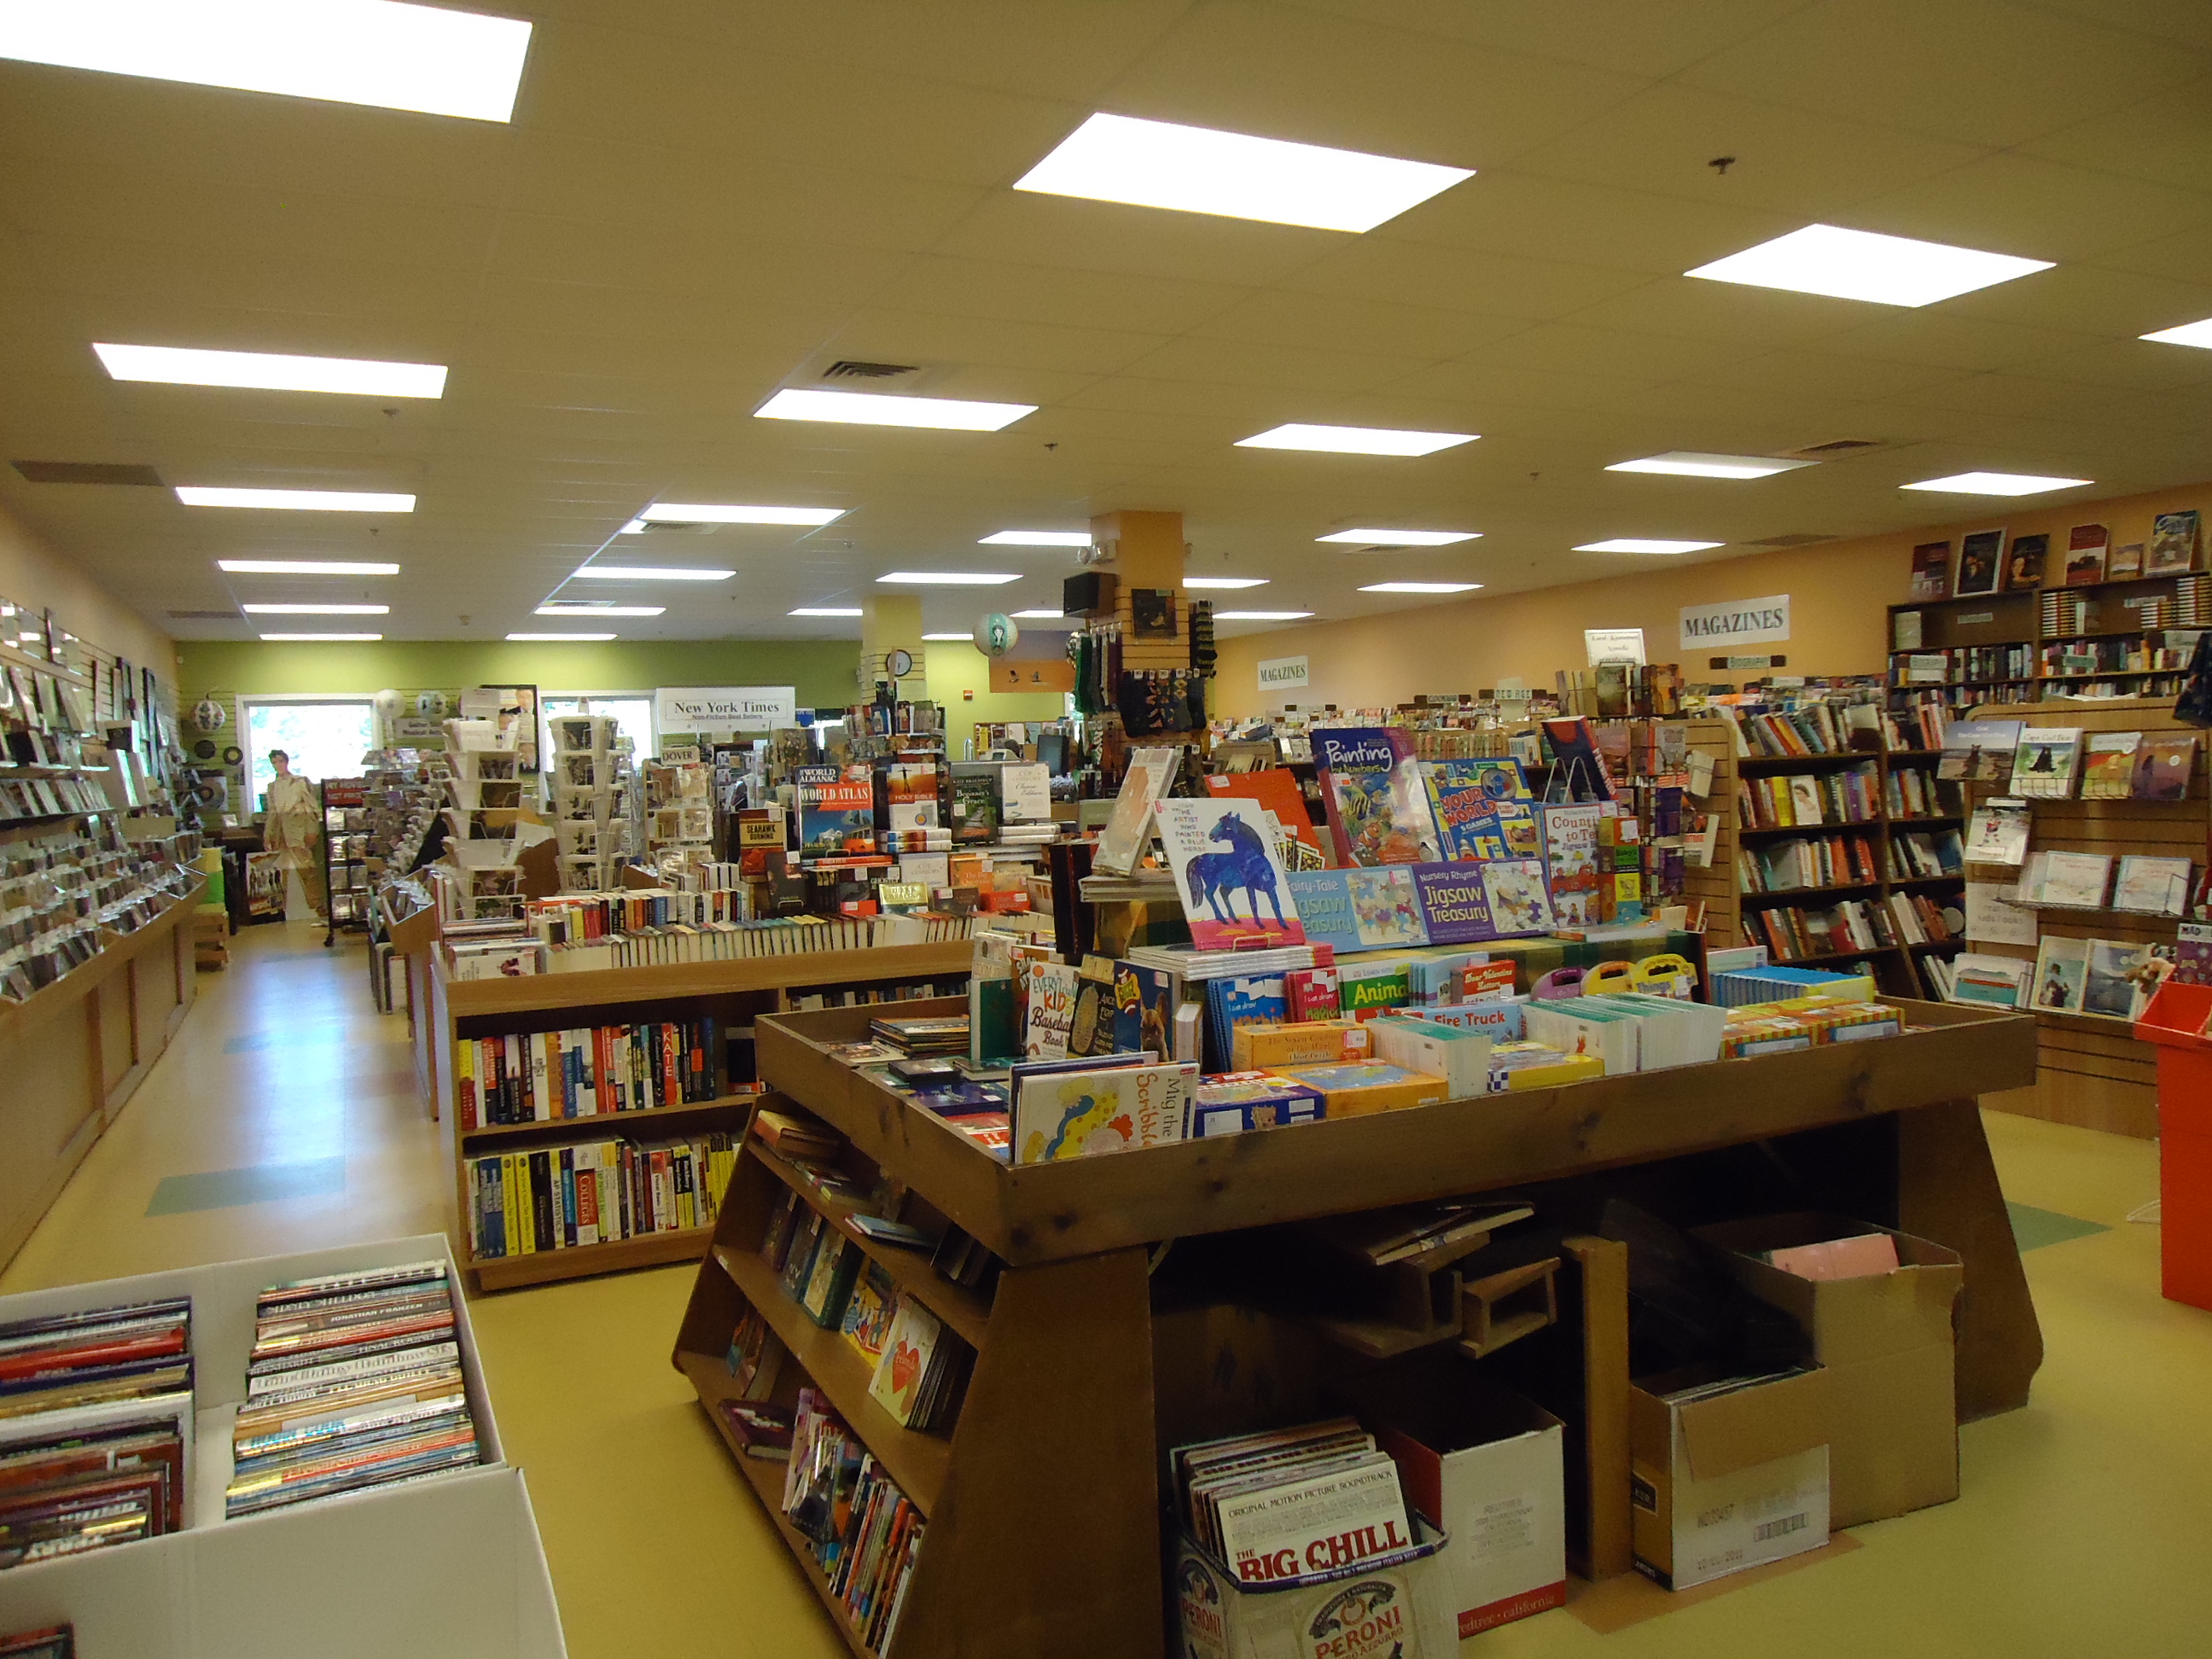 Bookstore photo